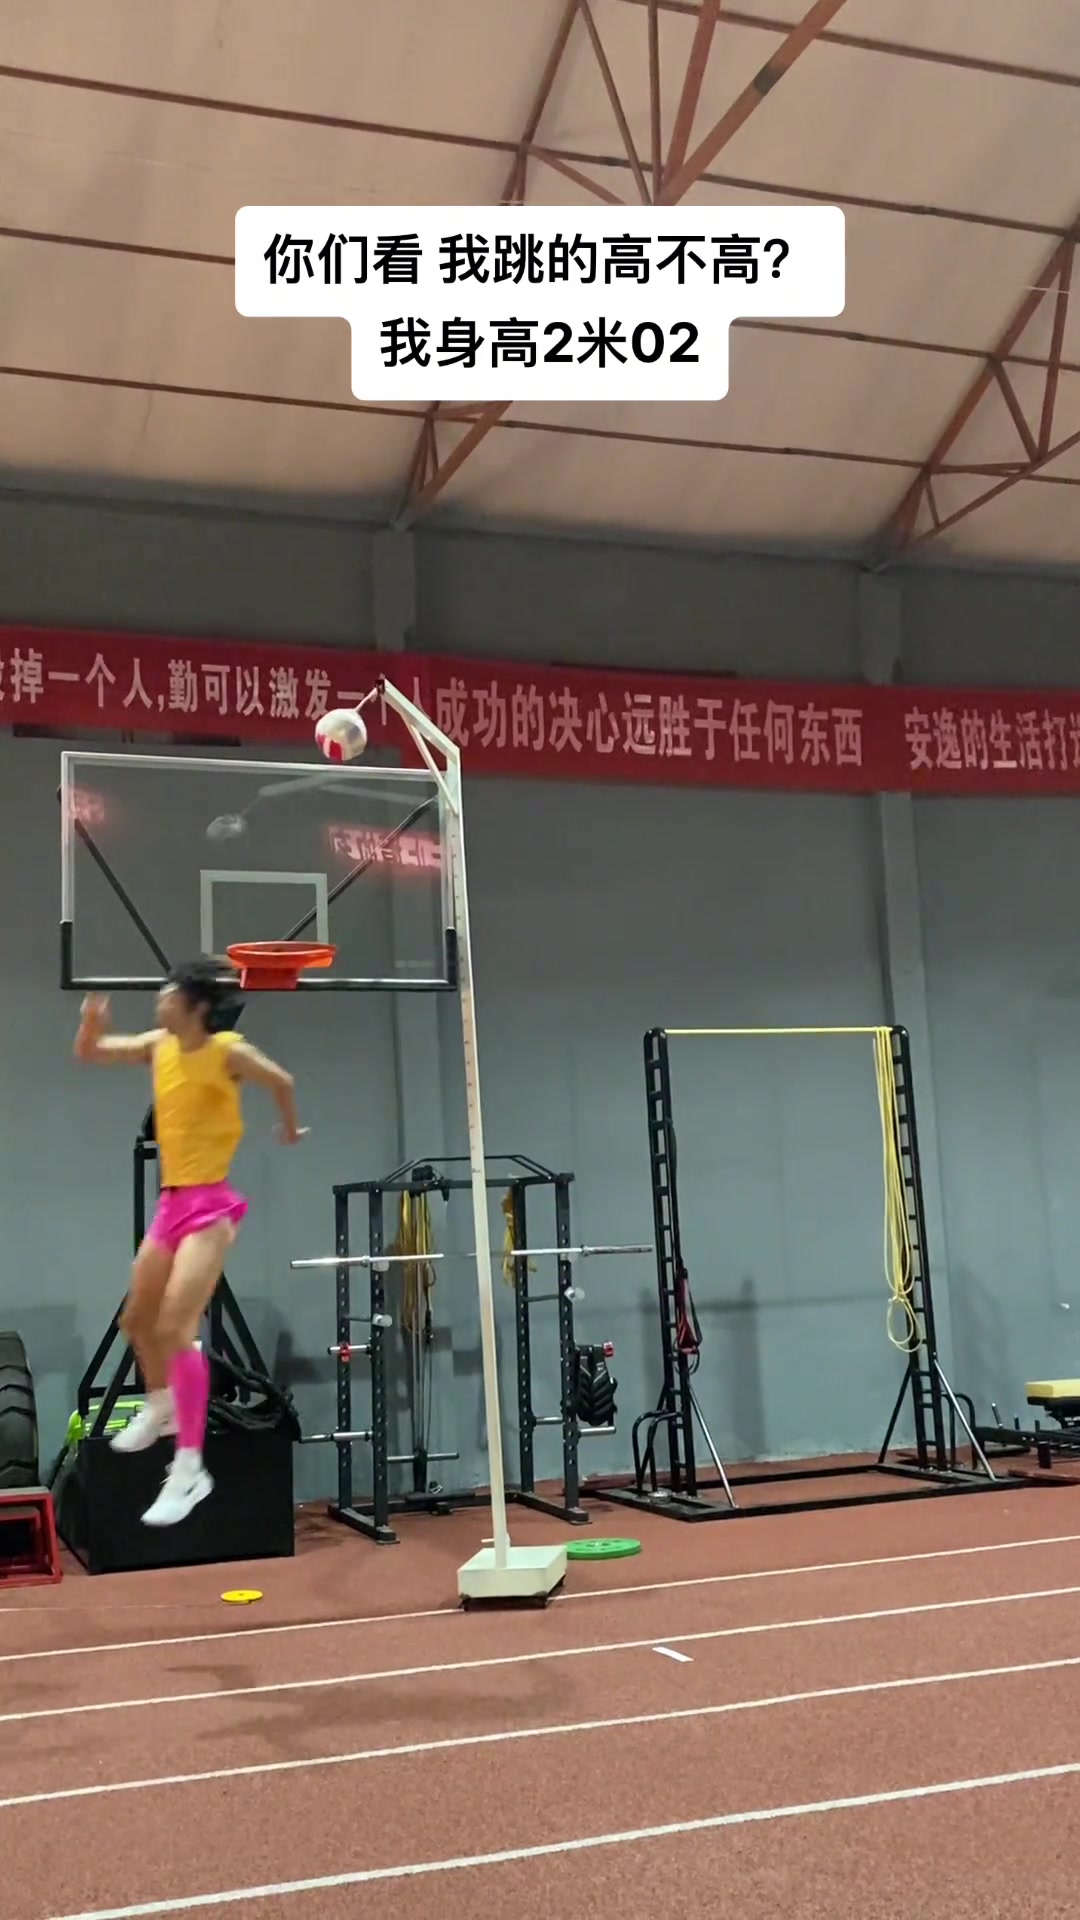 张国伟晒视频：我身高2米02，跳的高不高？